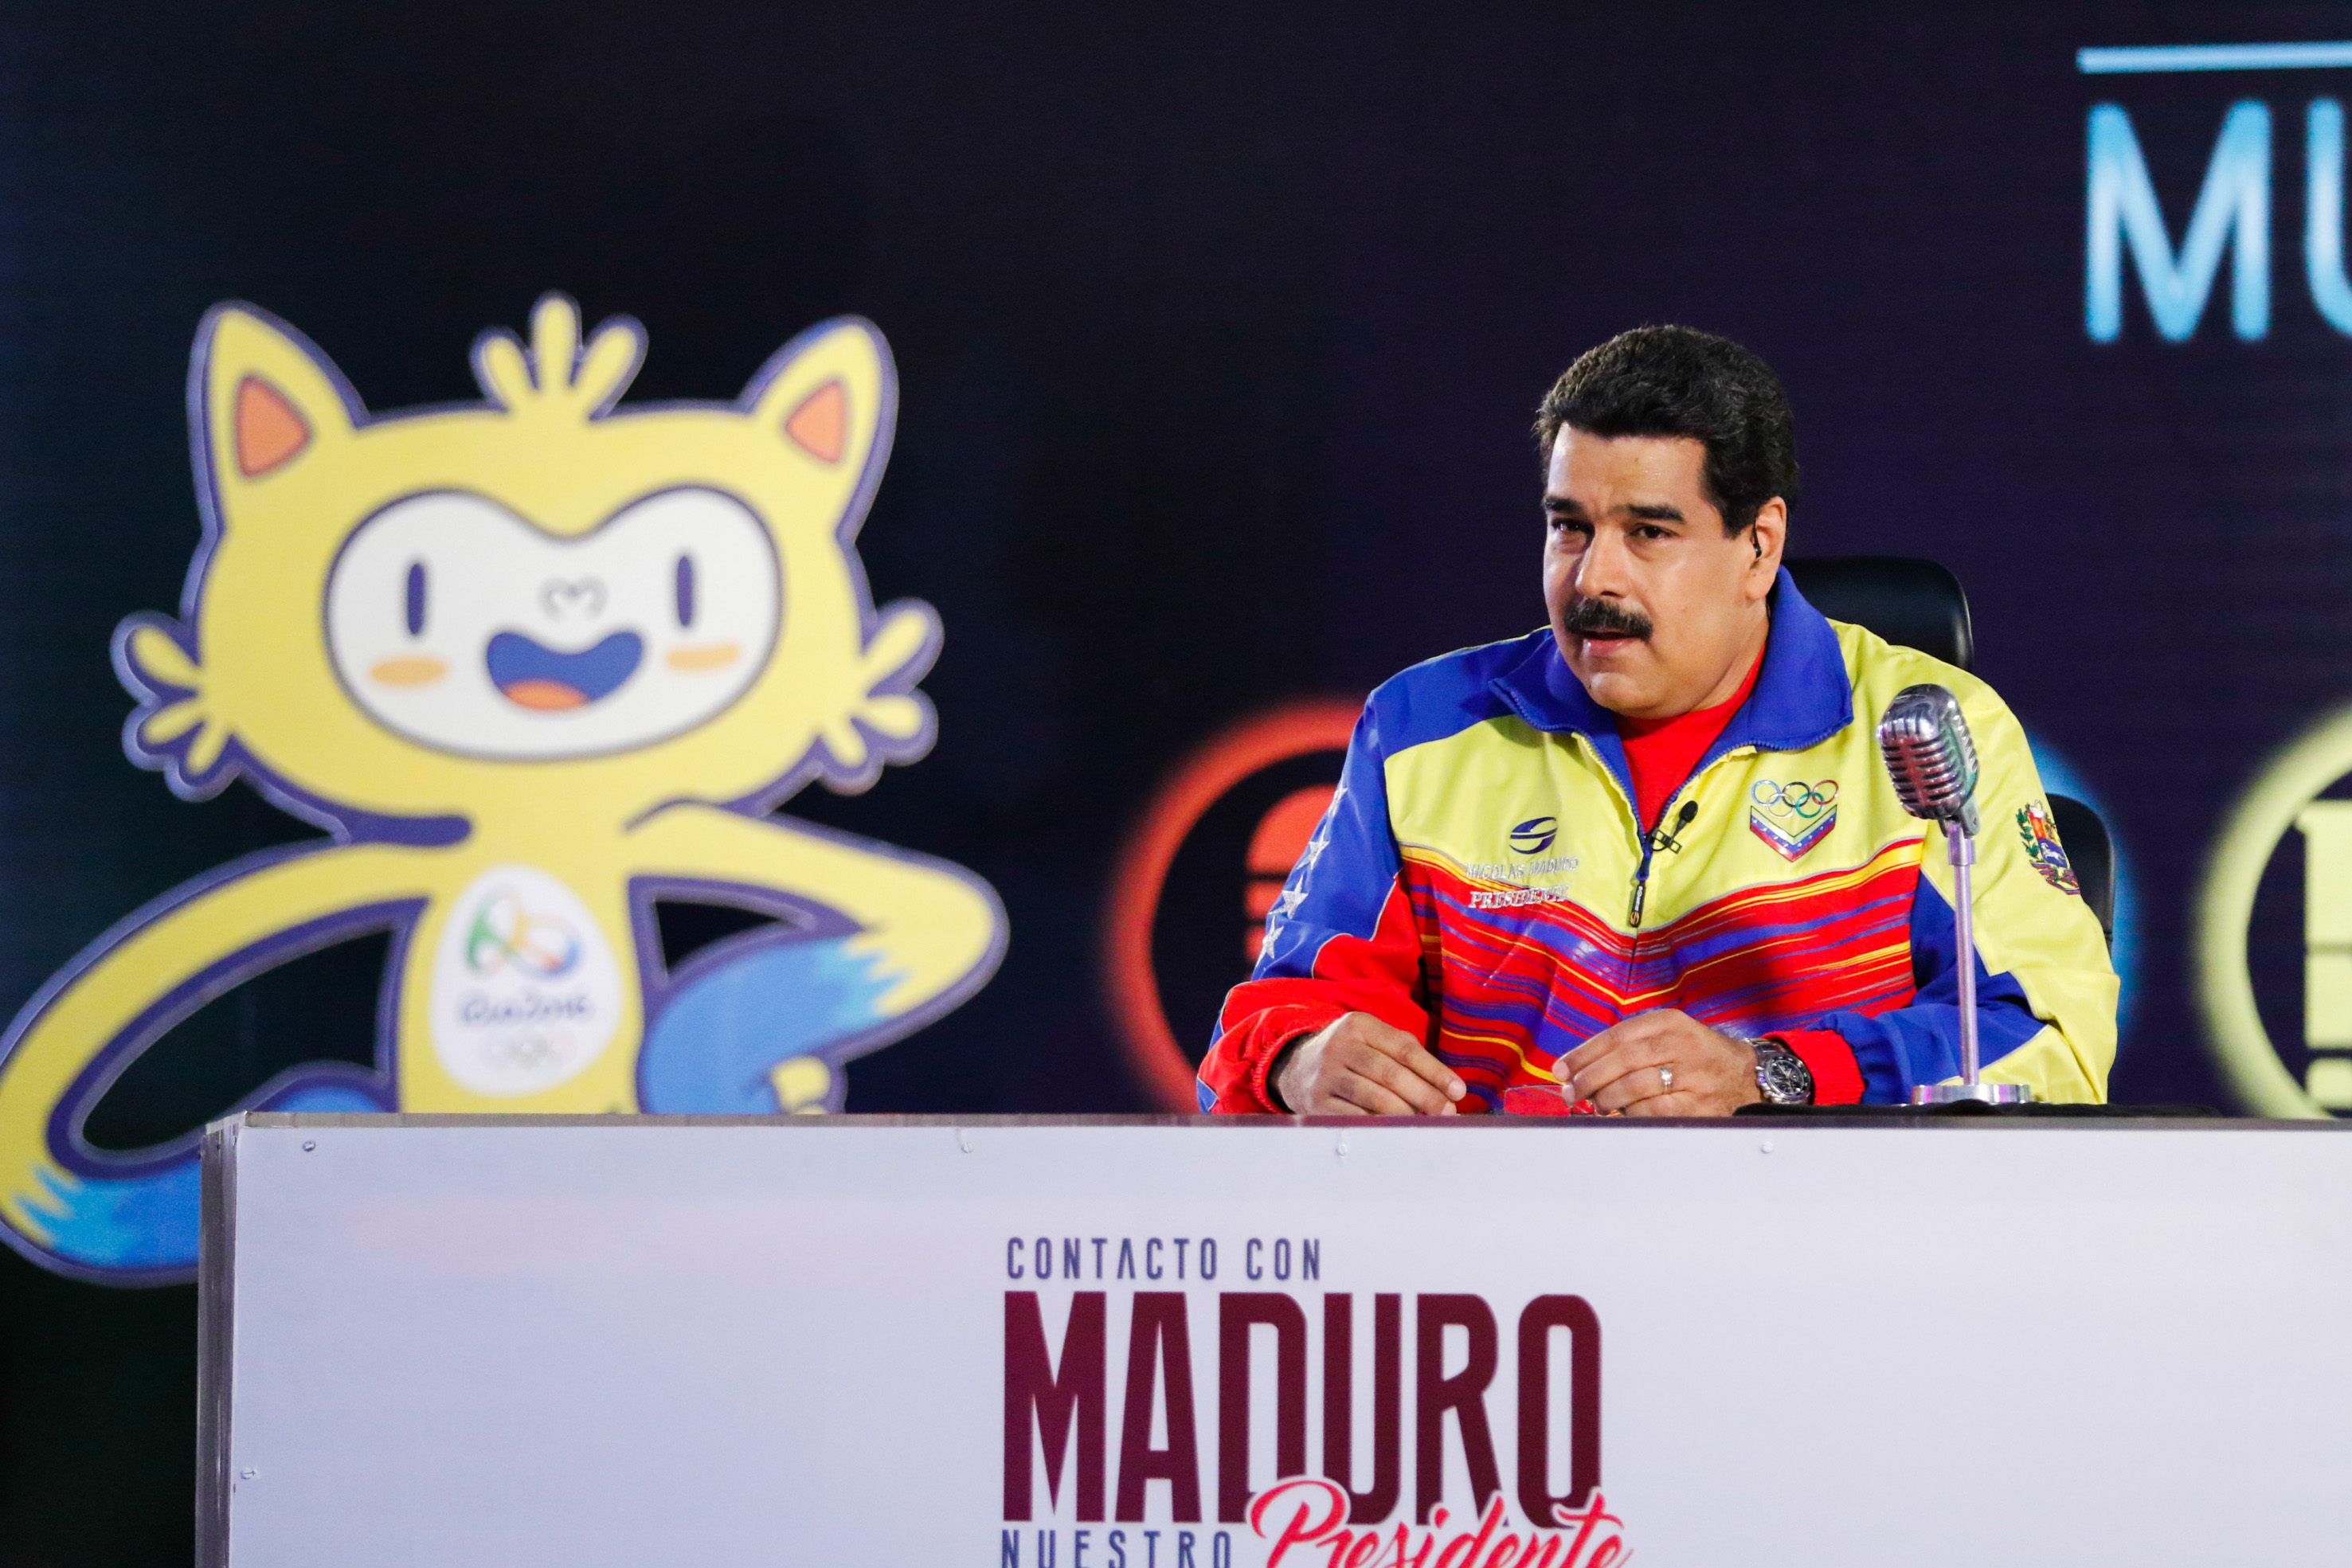 Maduro aseguró que el salario y todos los derechos de los trabajadores serán garantizados.